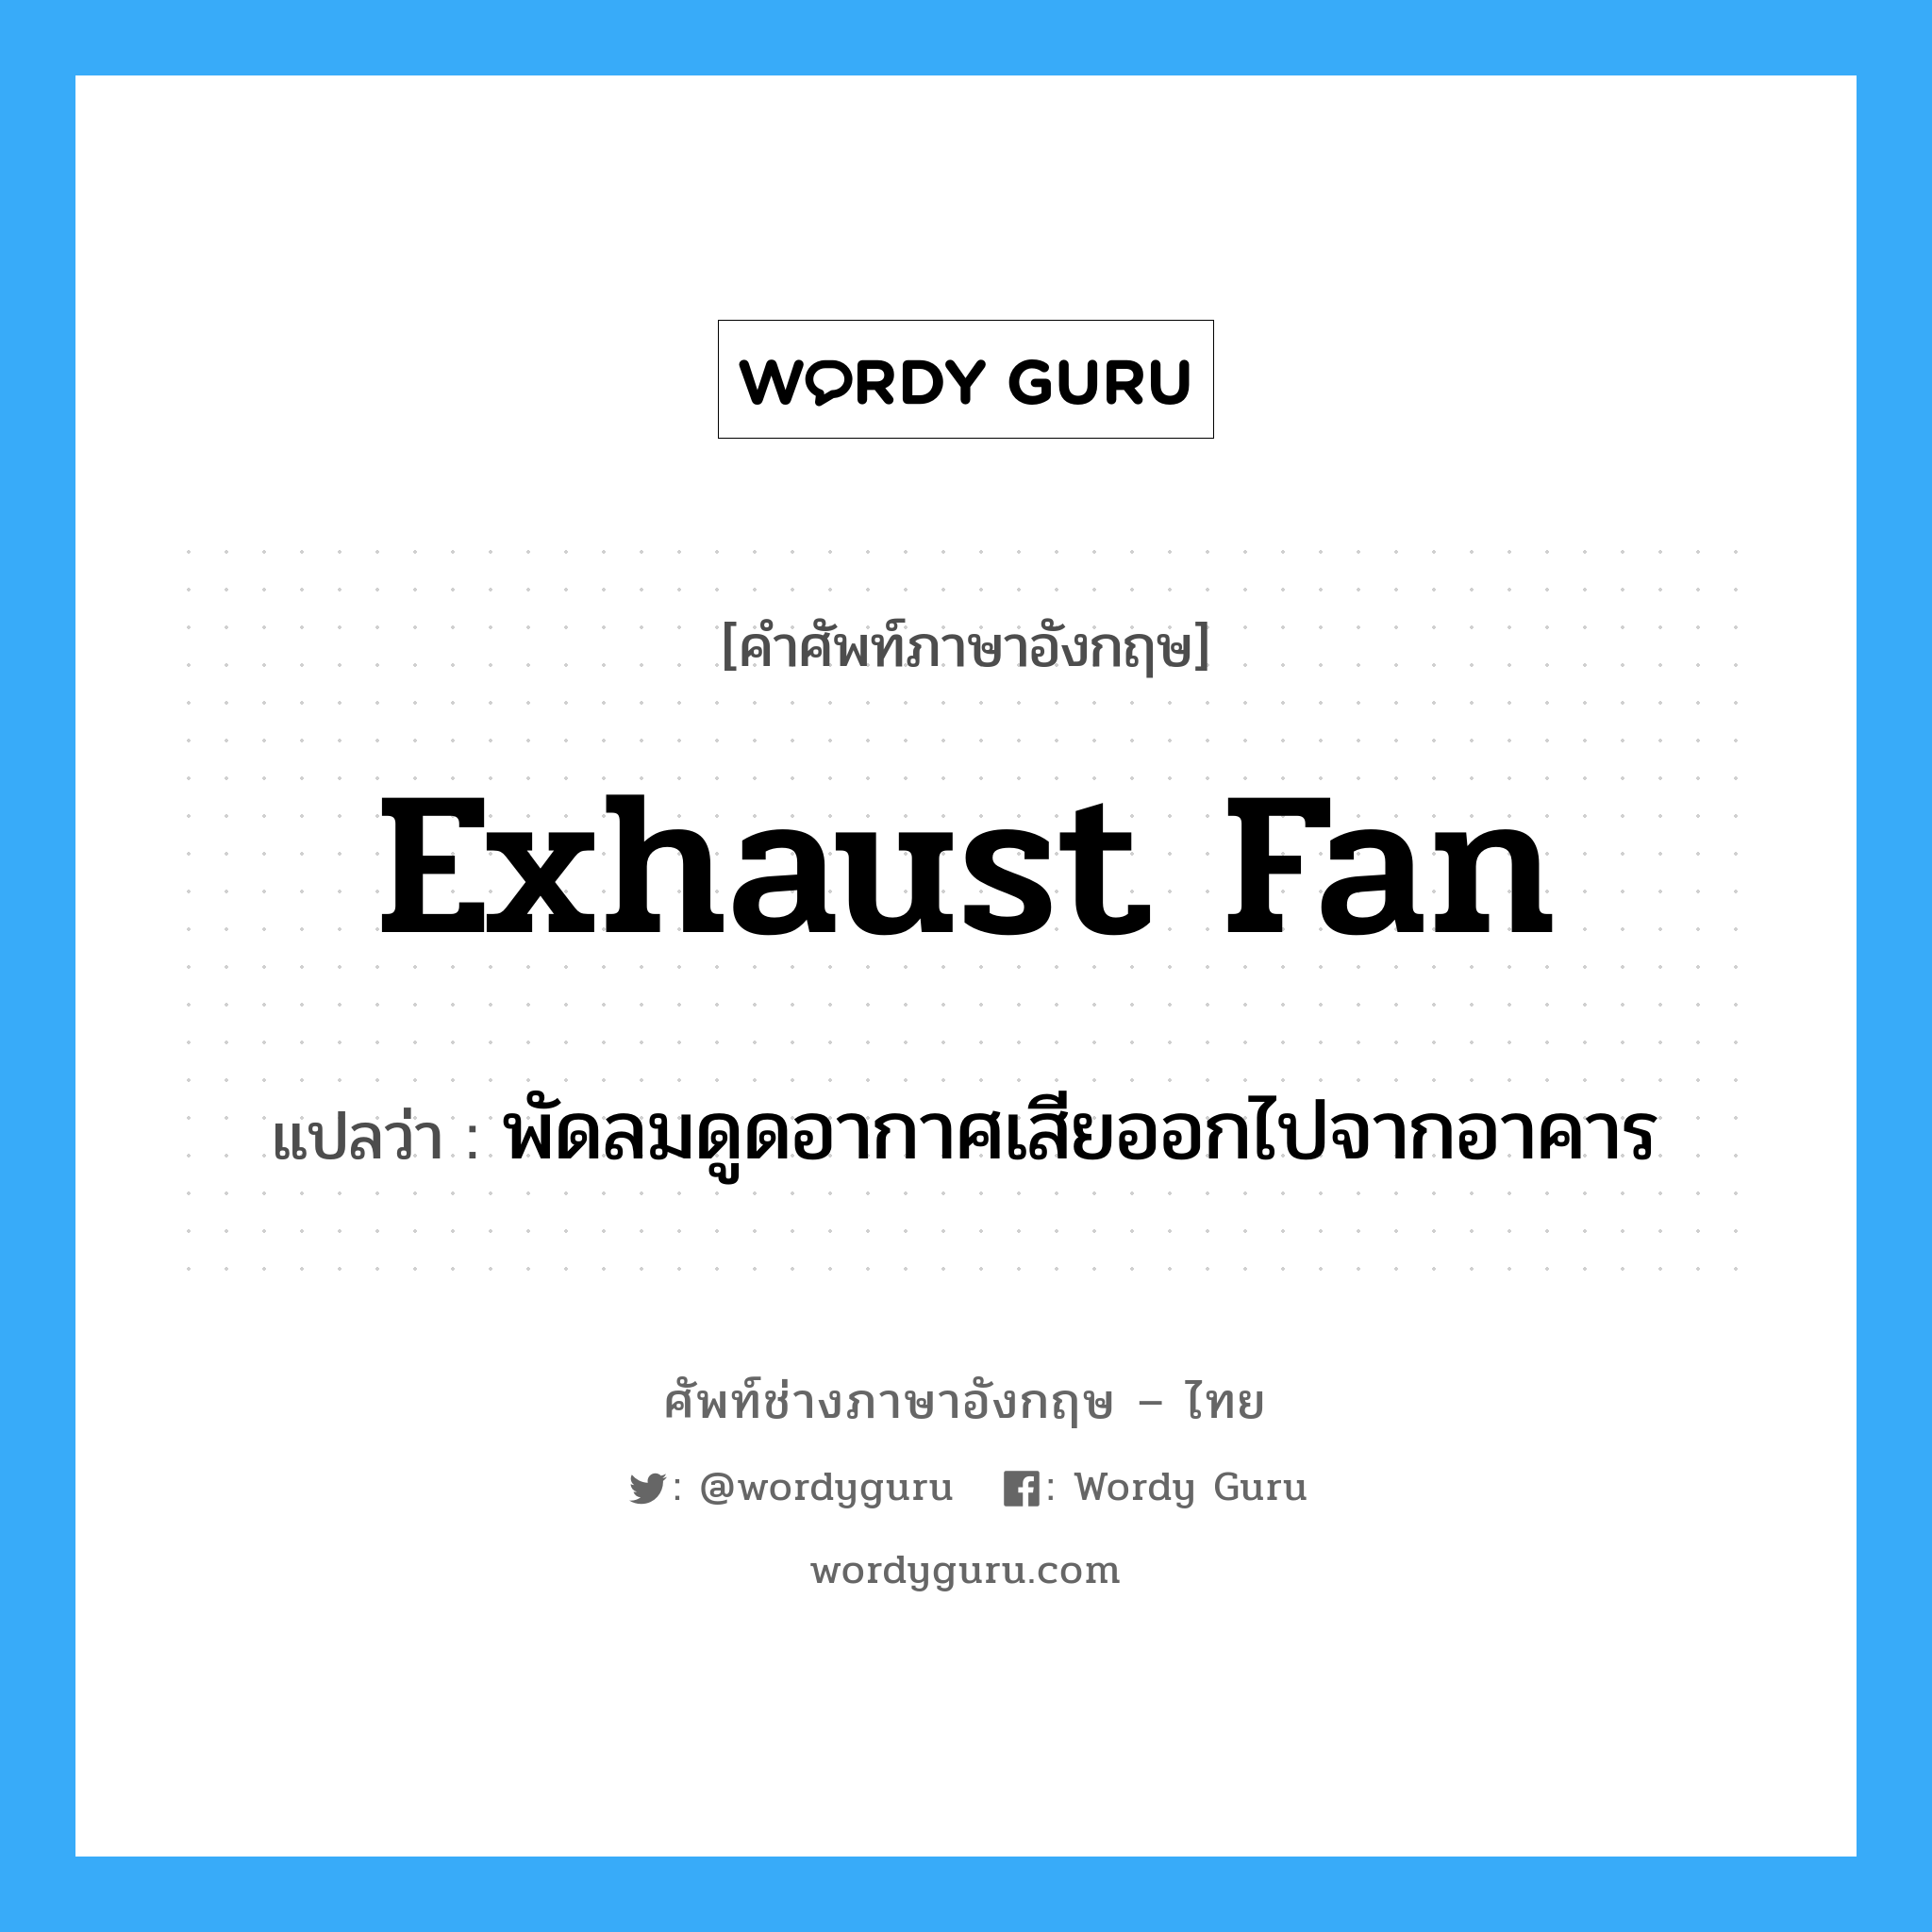 exhaust fan แปลว่า?, คำศัพท์ช่างภาษาอังกฤษ - ไทย exhaust fan คำศัพท์ภาษาอังกฤษ exhaust fan แปลว่า พัดลมดูดอากาศเสียออกไปจากอาคาร